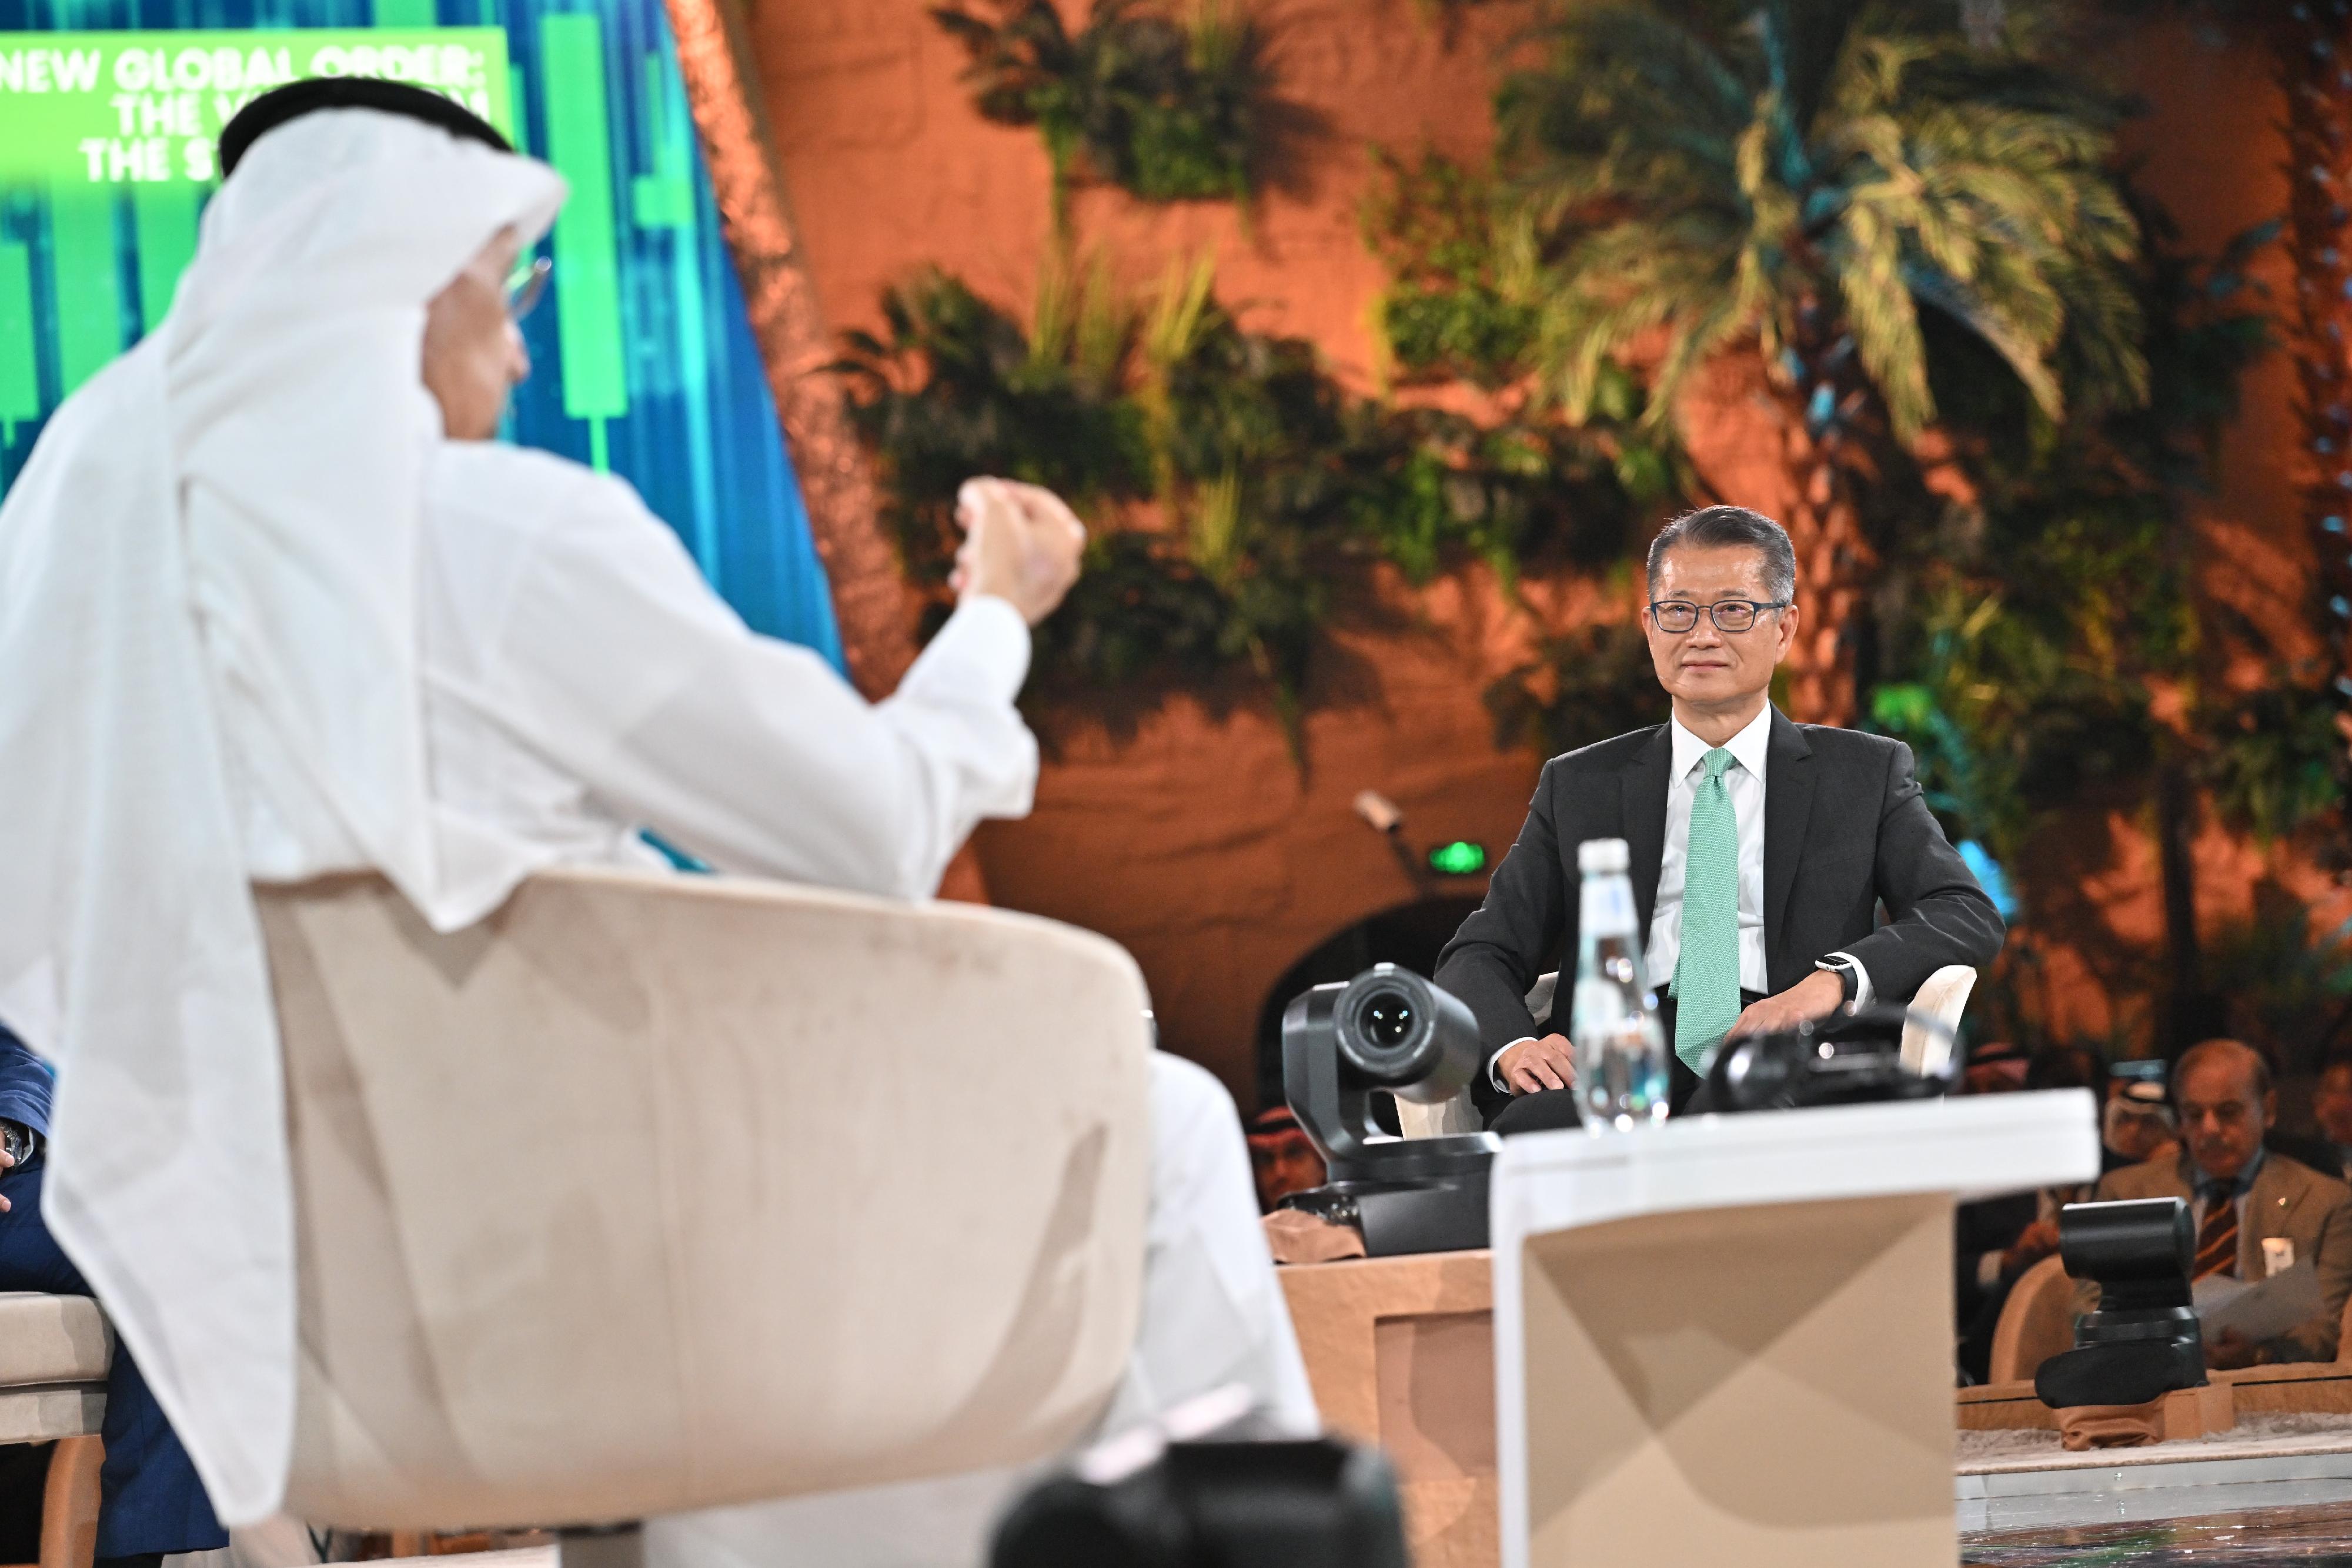 財政司司長陳茂波昨日（十月二十五日，沙特阿拉伯時間）展開沙特阿拉伯的訪問行程。陳茂波（右）早上出席在利雅德舉行的第六屆「未來投資倡議大會」，並在題為「新環球秩序：政府的觀點」的主題論壇擔任講者。